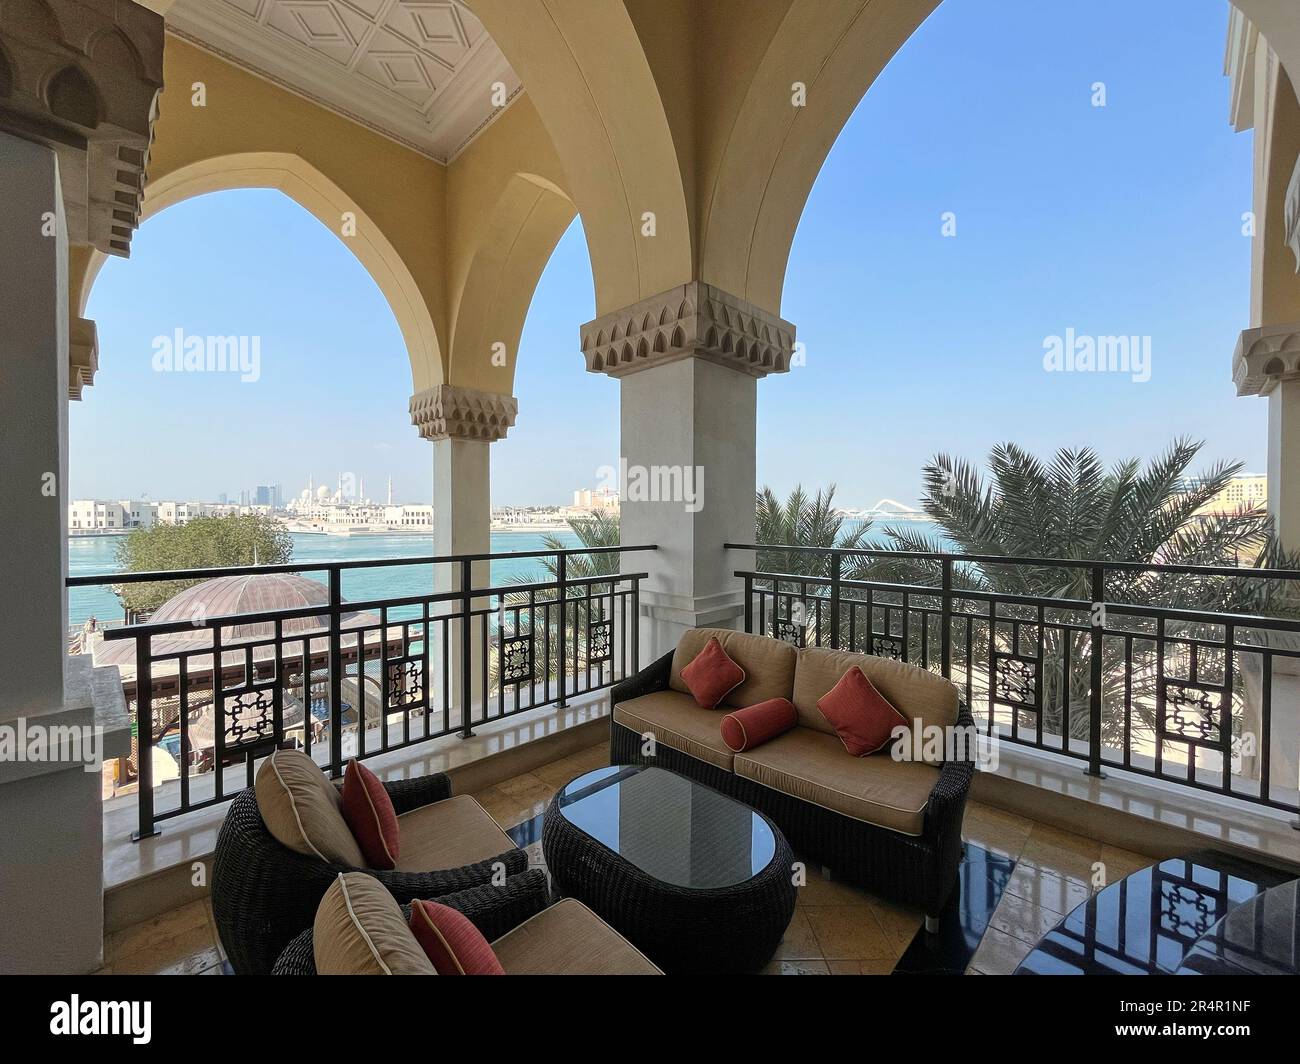 Die Terrasse im Shangri-La Qaryat Al Beri Hotel, Abu Dhabi, Vereinigte Arabische Emirate, mit der im Hintergrund die große Moschee zu sehen ist Stockfoto